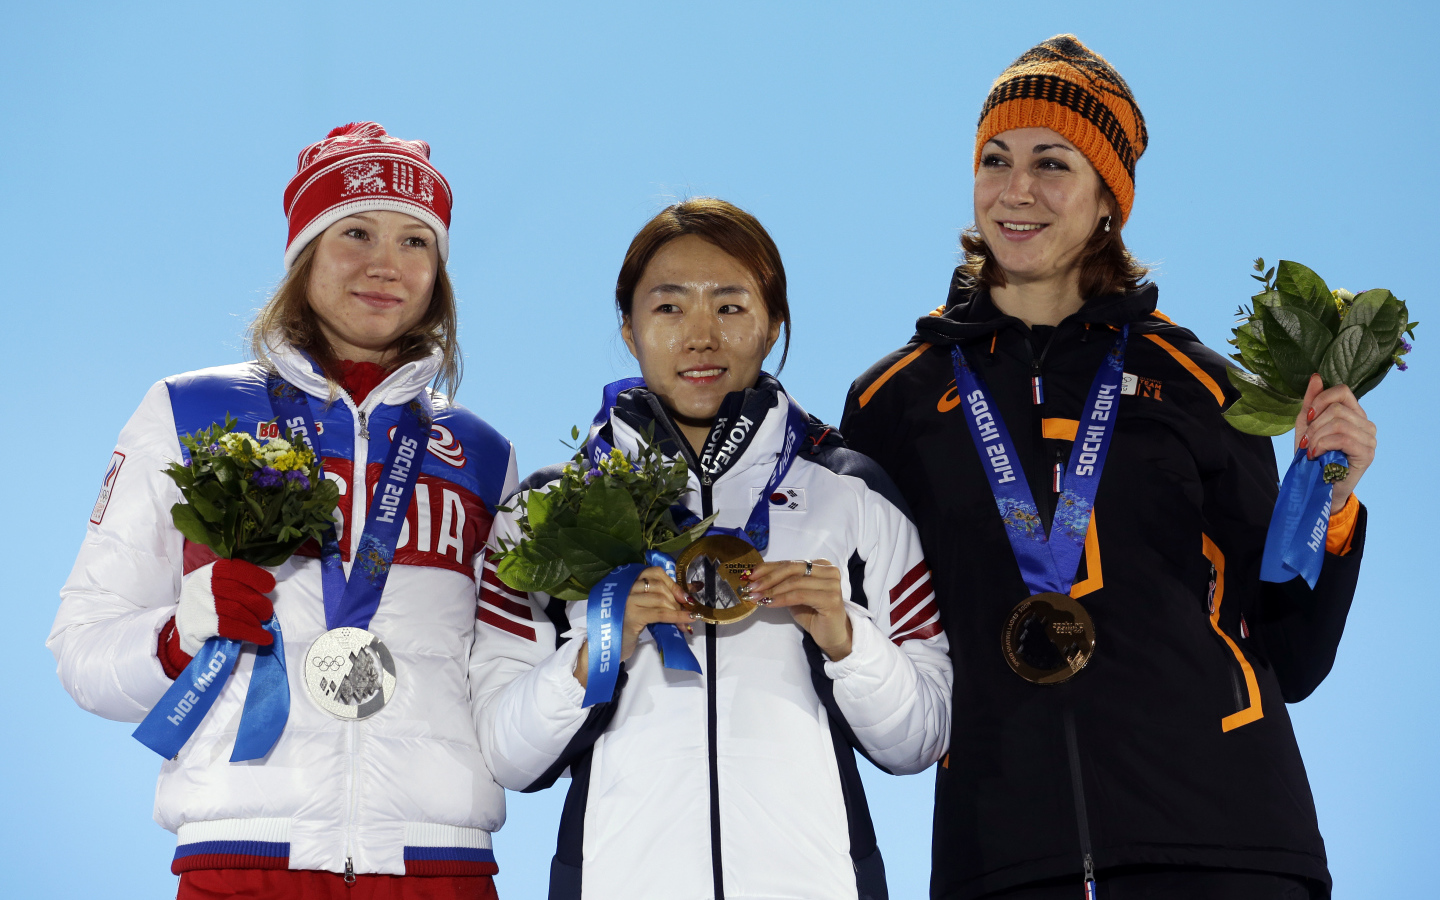 Маргот Бур голландская конькобежка две бронзовые медали на олимпиаде в Сочи 2014 год